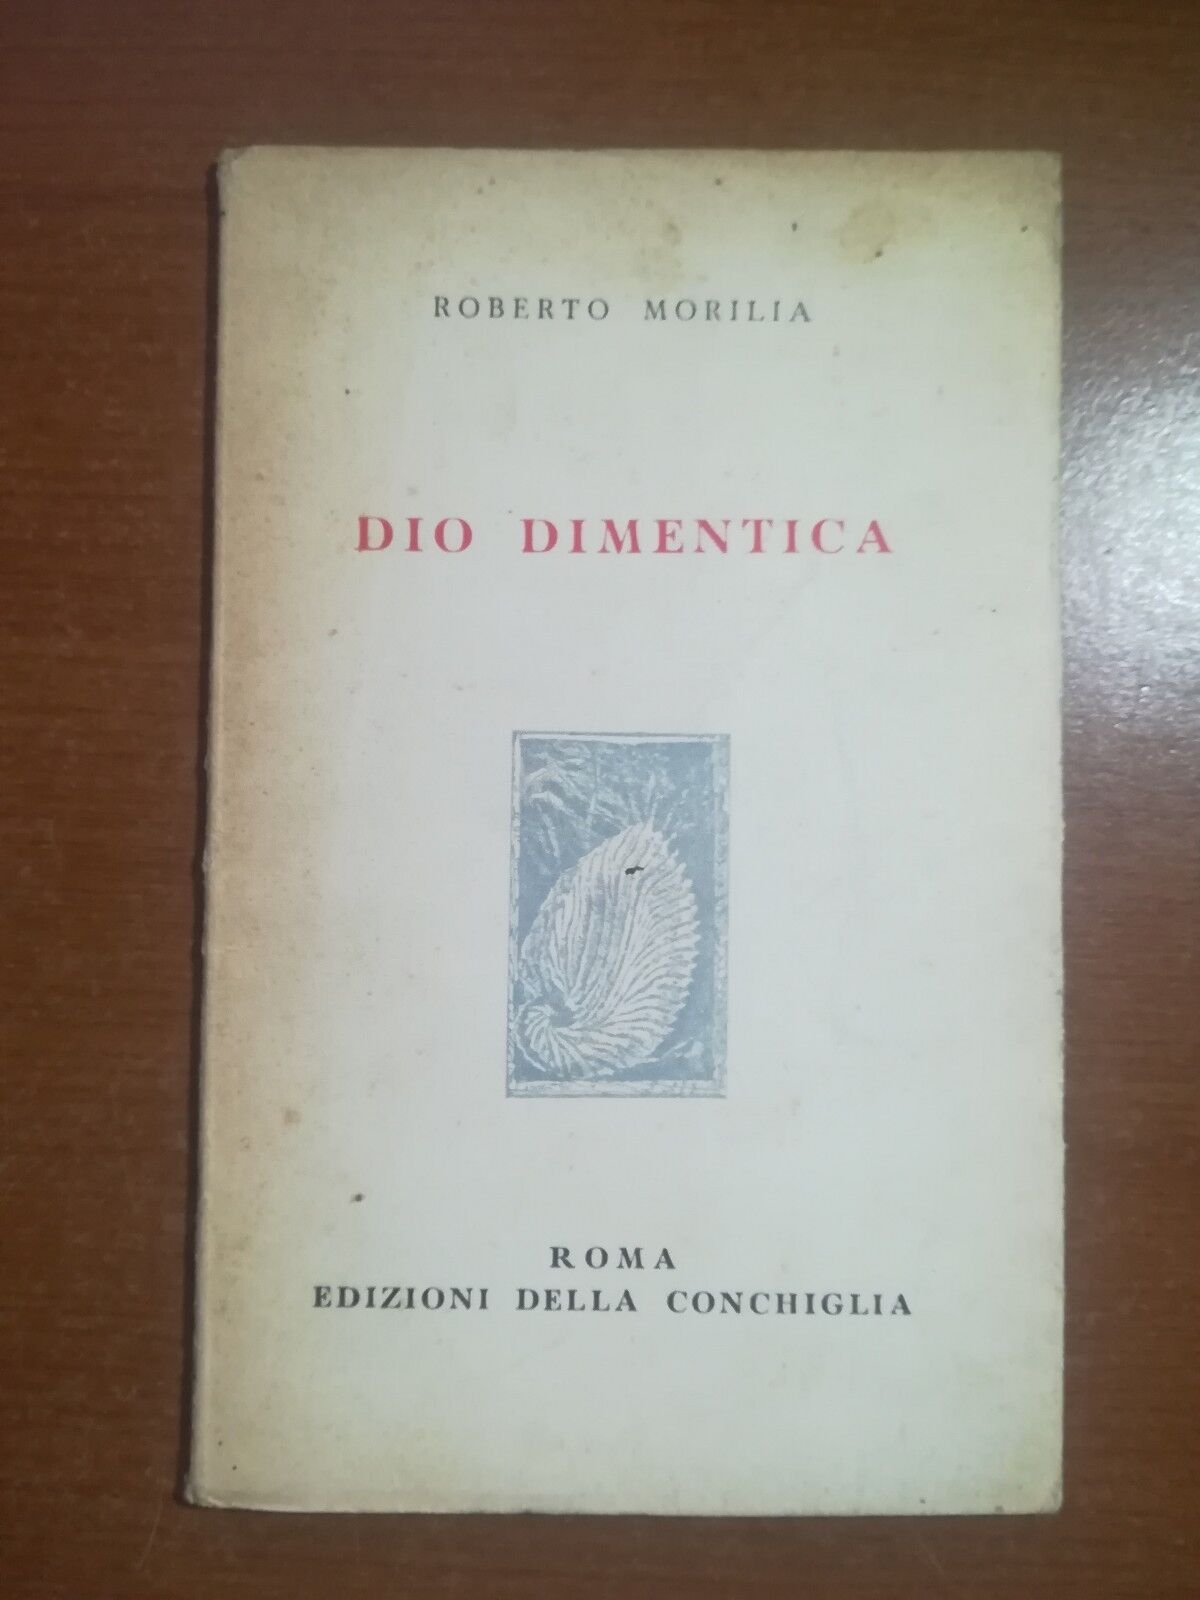 Dio dimentica - Roberto Morilia - Edizioni della conchiglia - 1952 - M